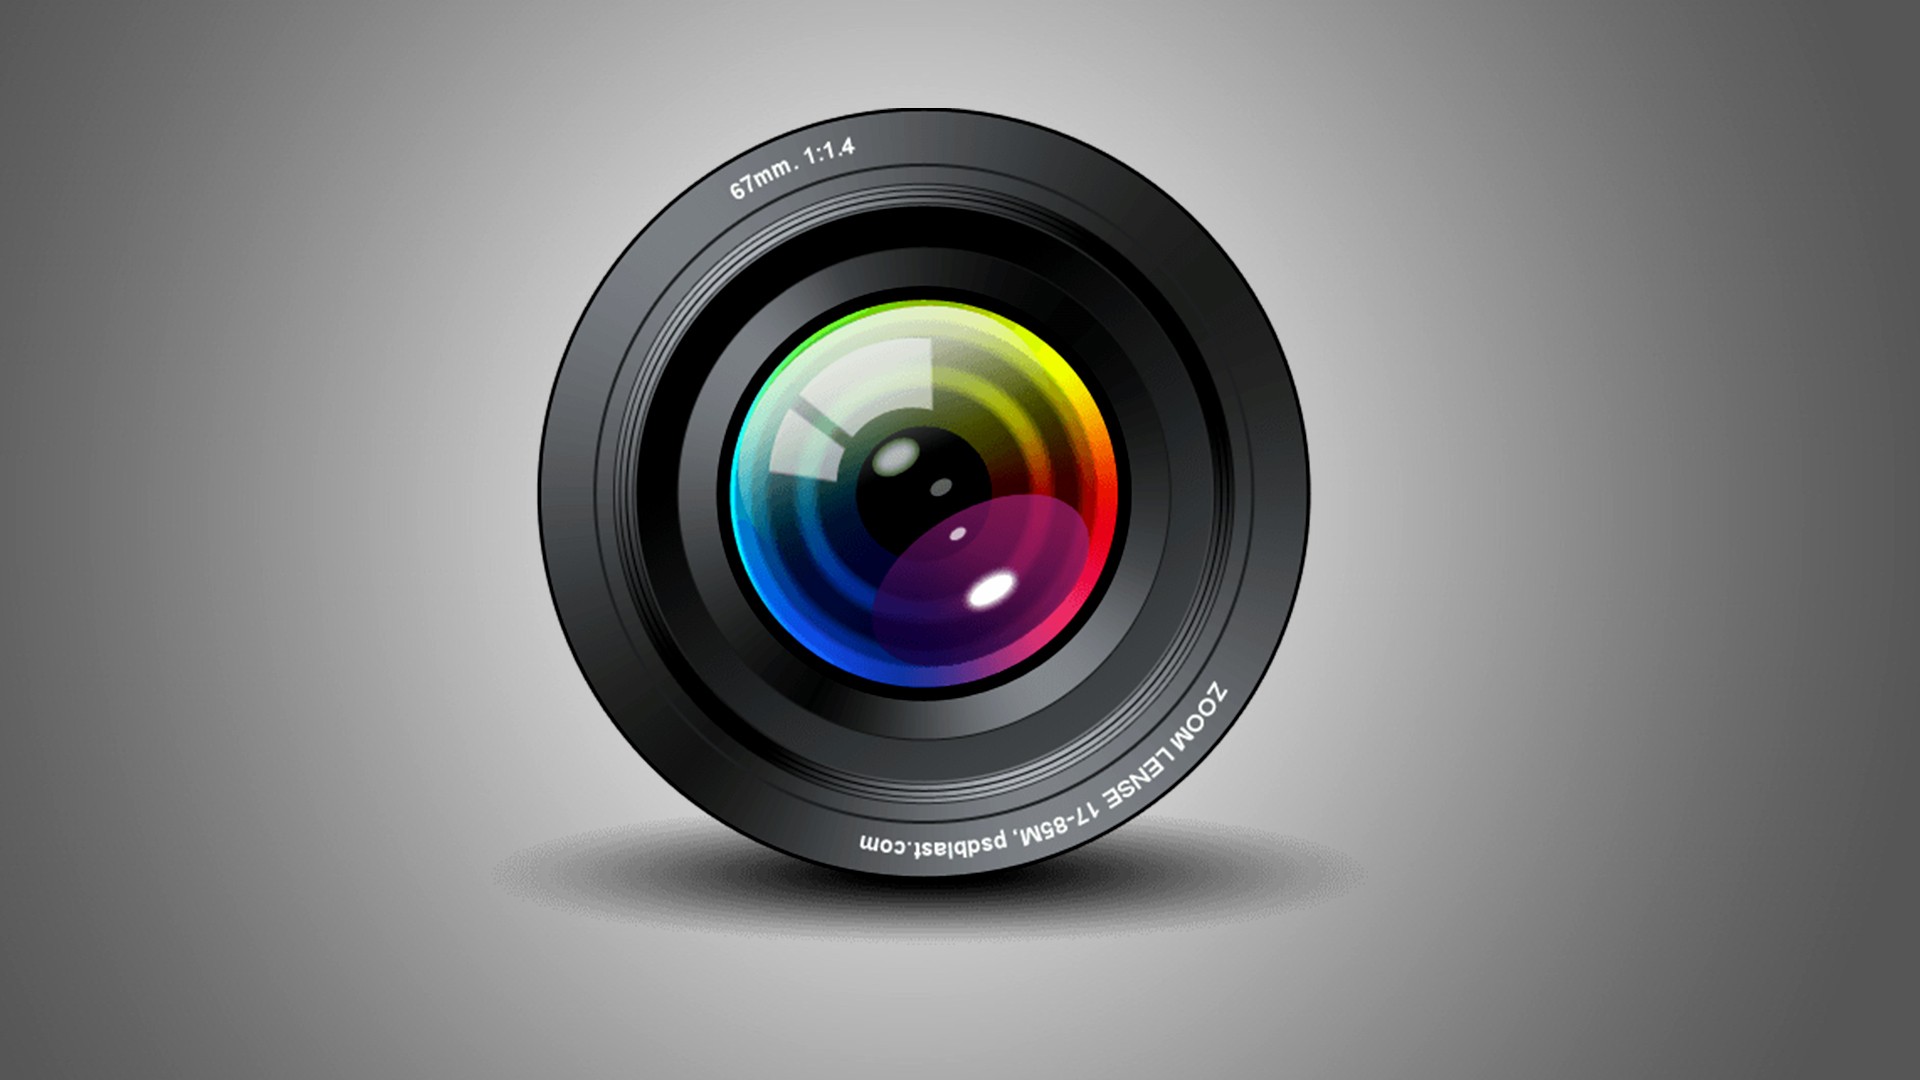 fond d'écran de l'objectif de la caméra,objectif de la caméra,lentille,produit,caméra,la photographie